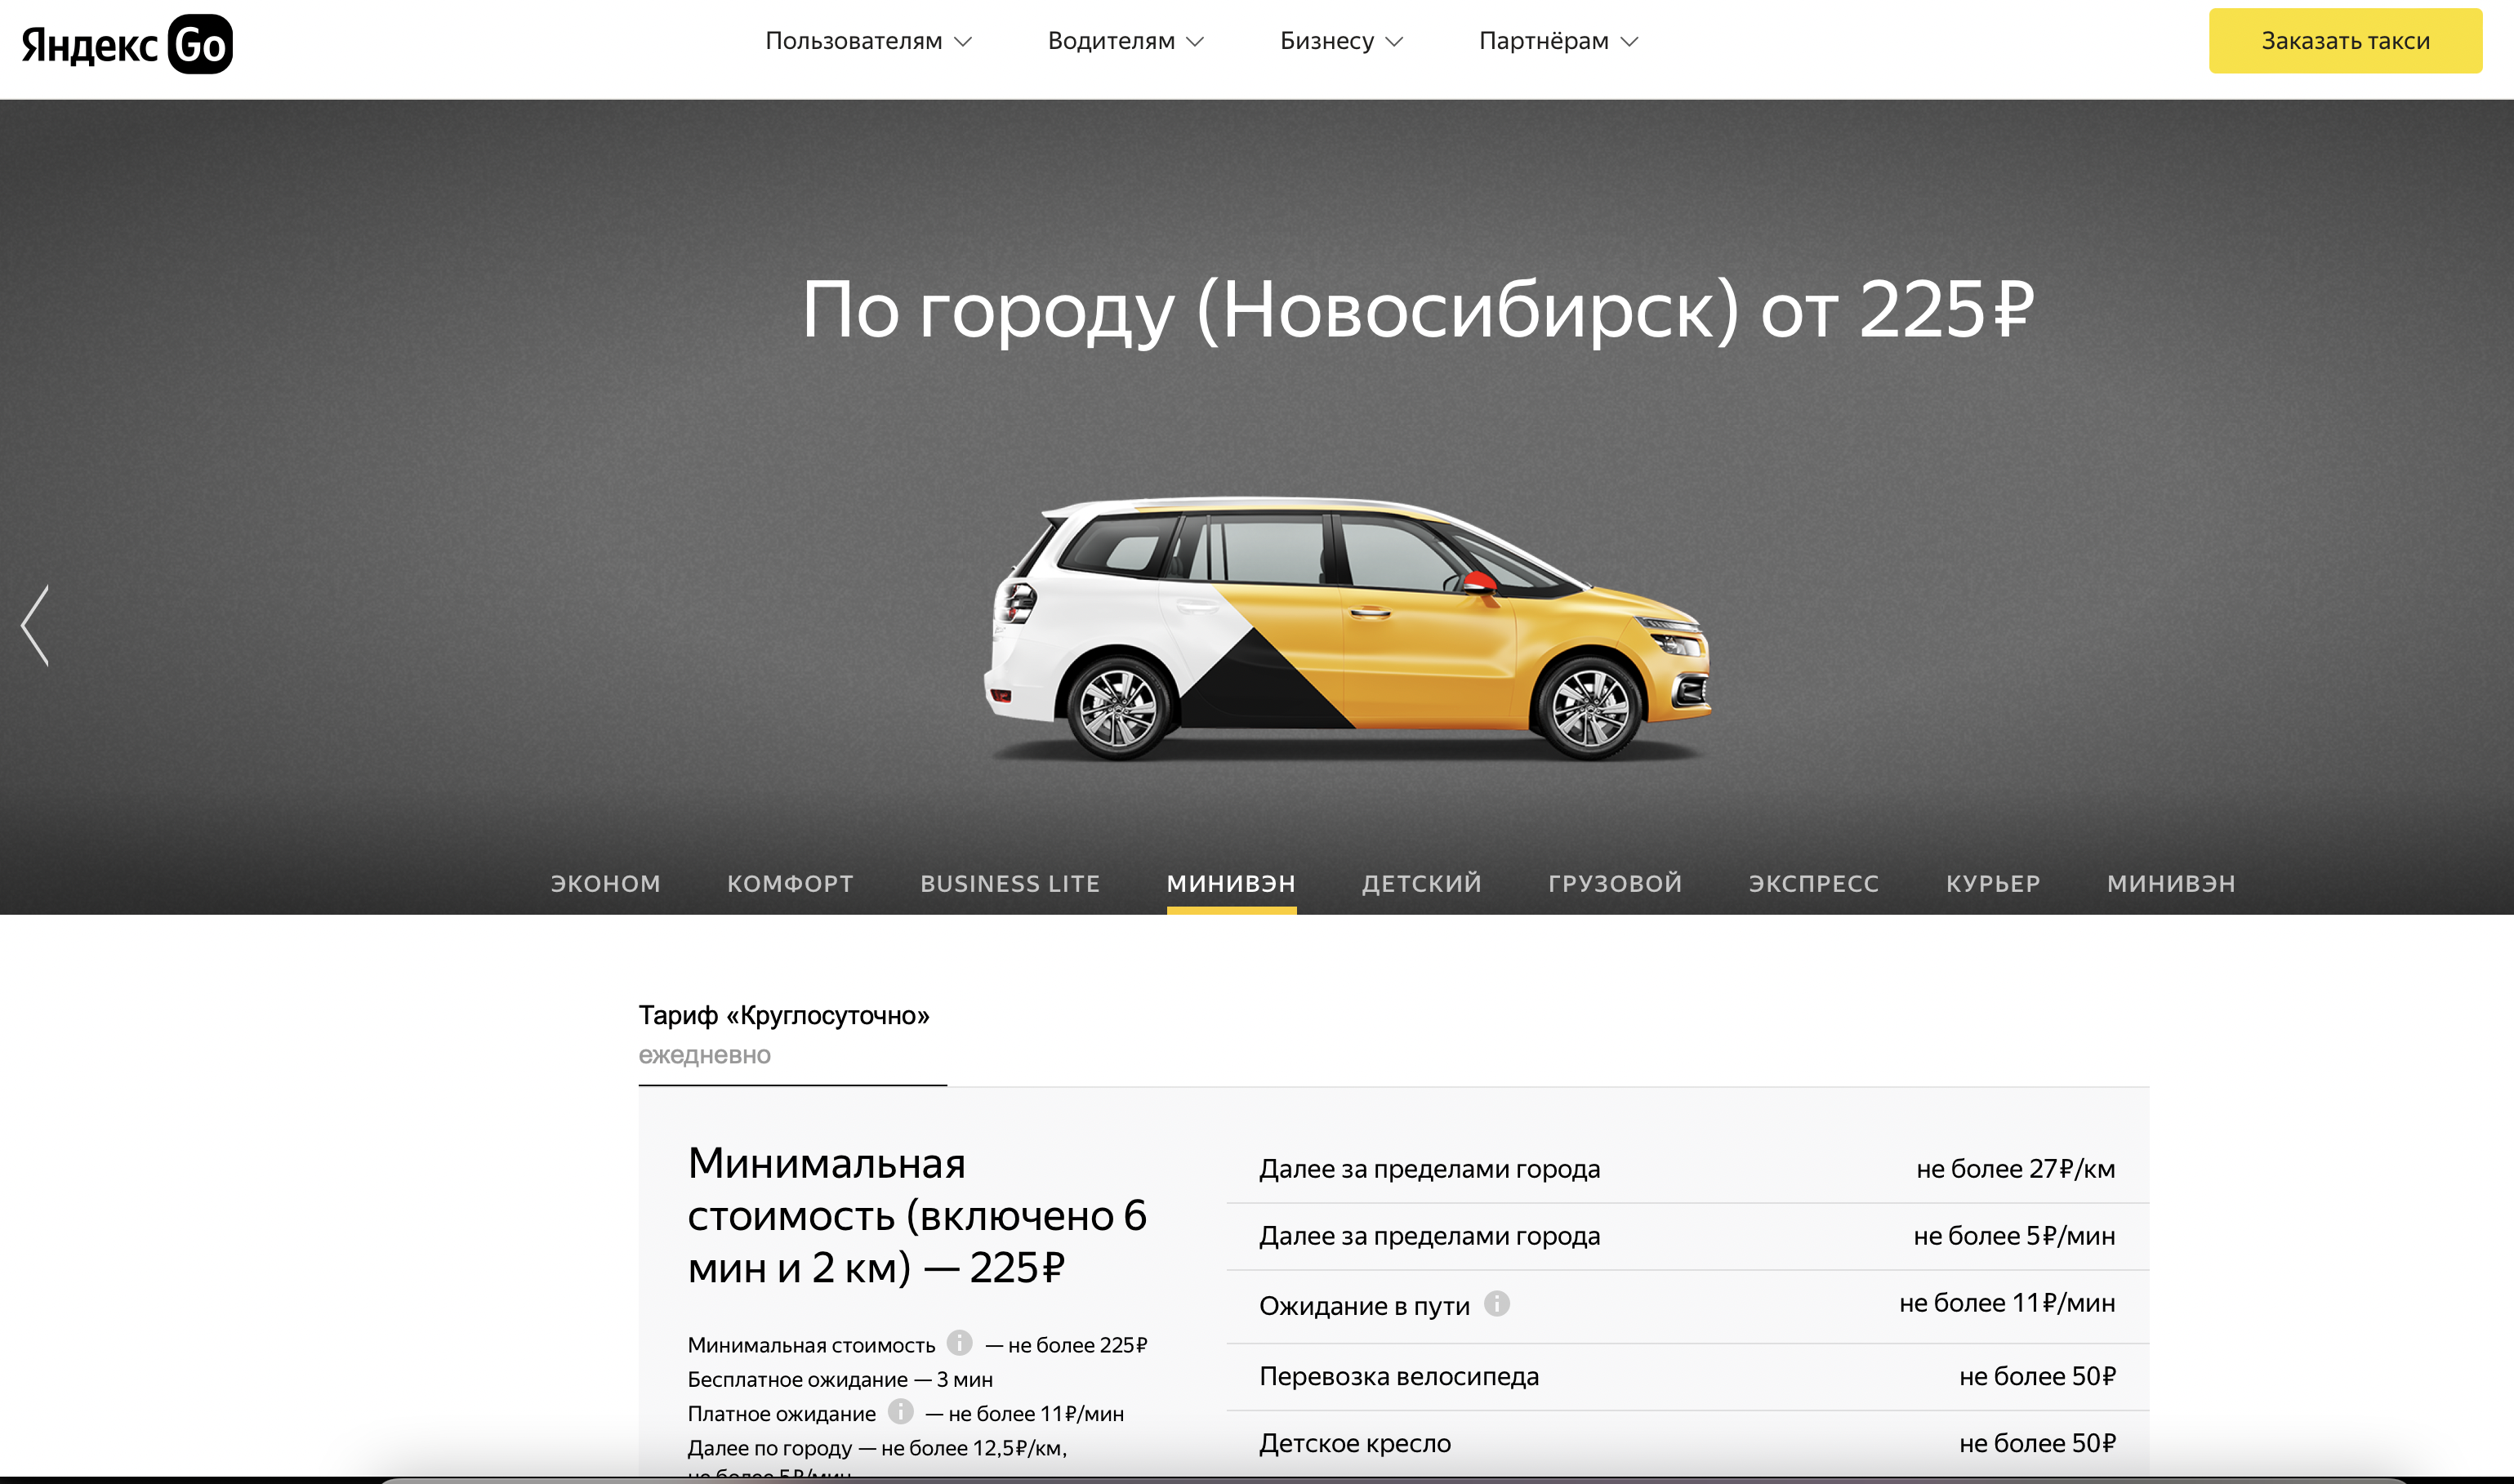 Такси Новосибирск заказать. Номер телефона новосибирского такси